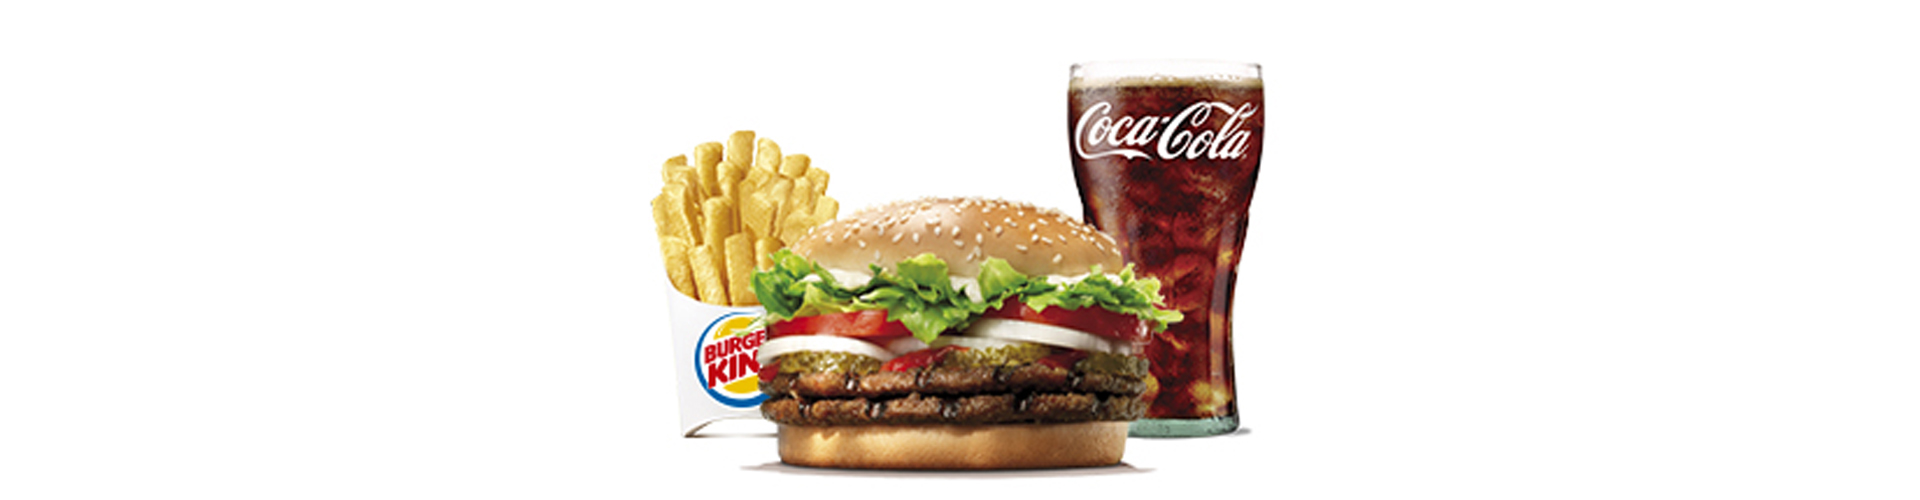 burgerking-40001708-cocacola-ensalada